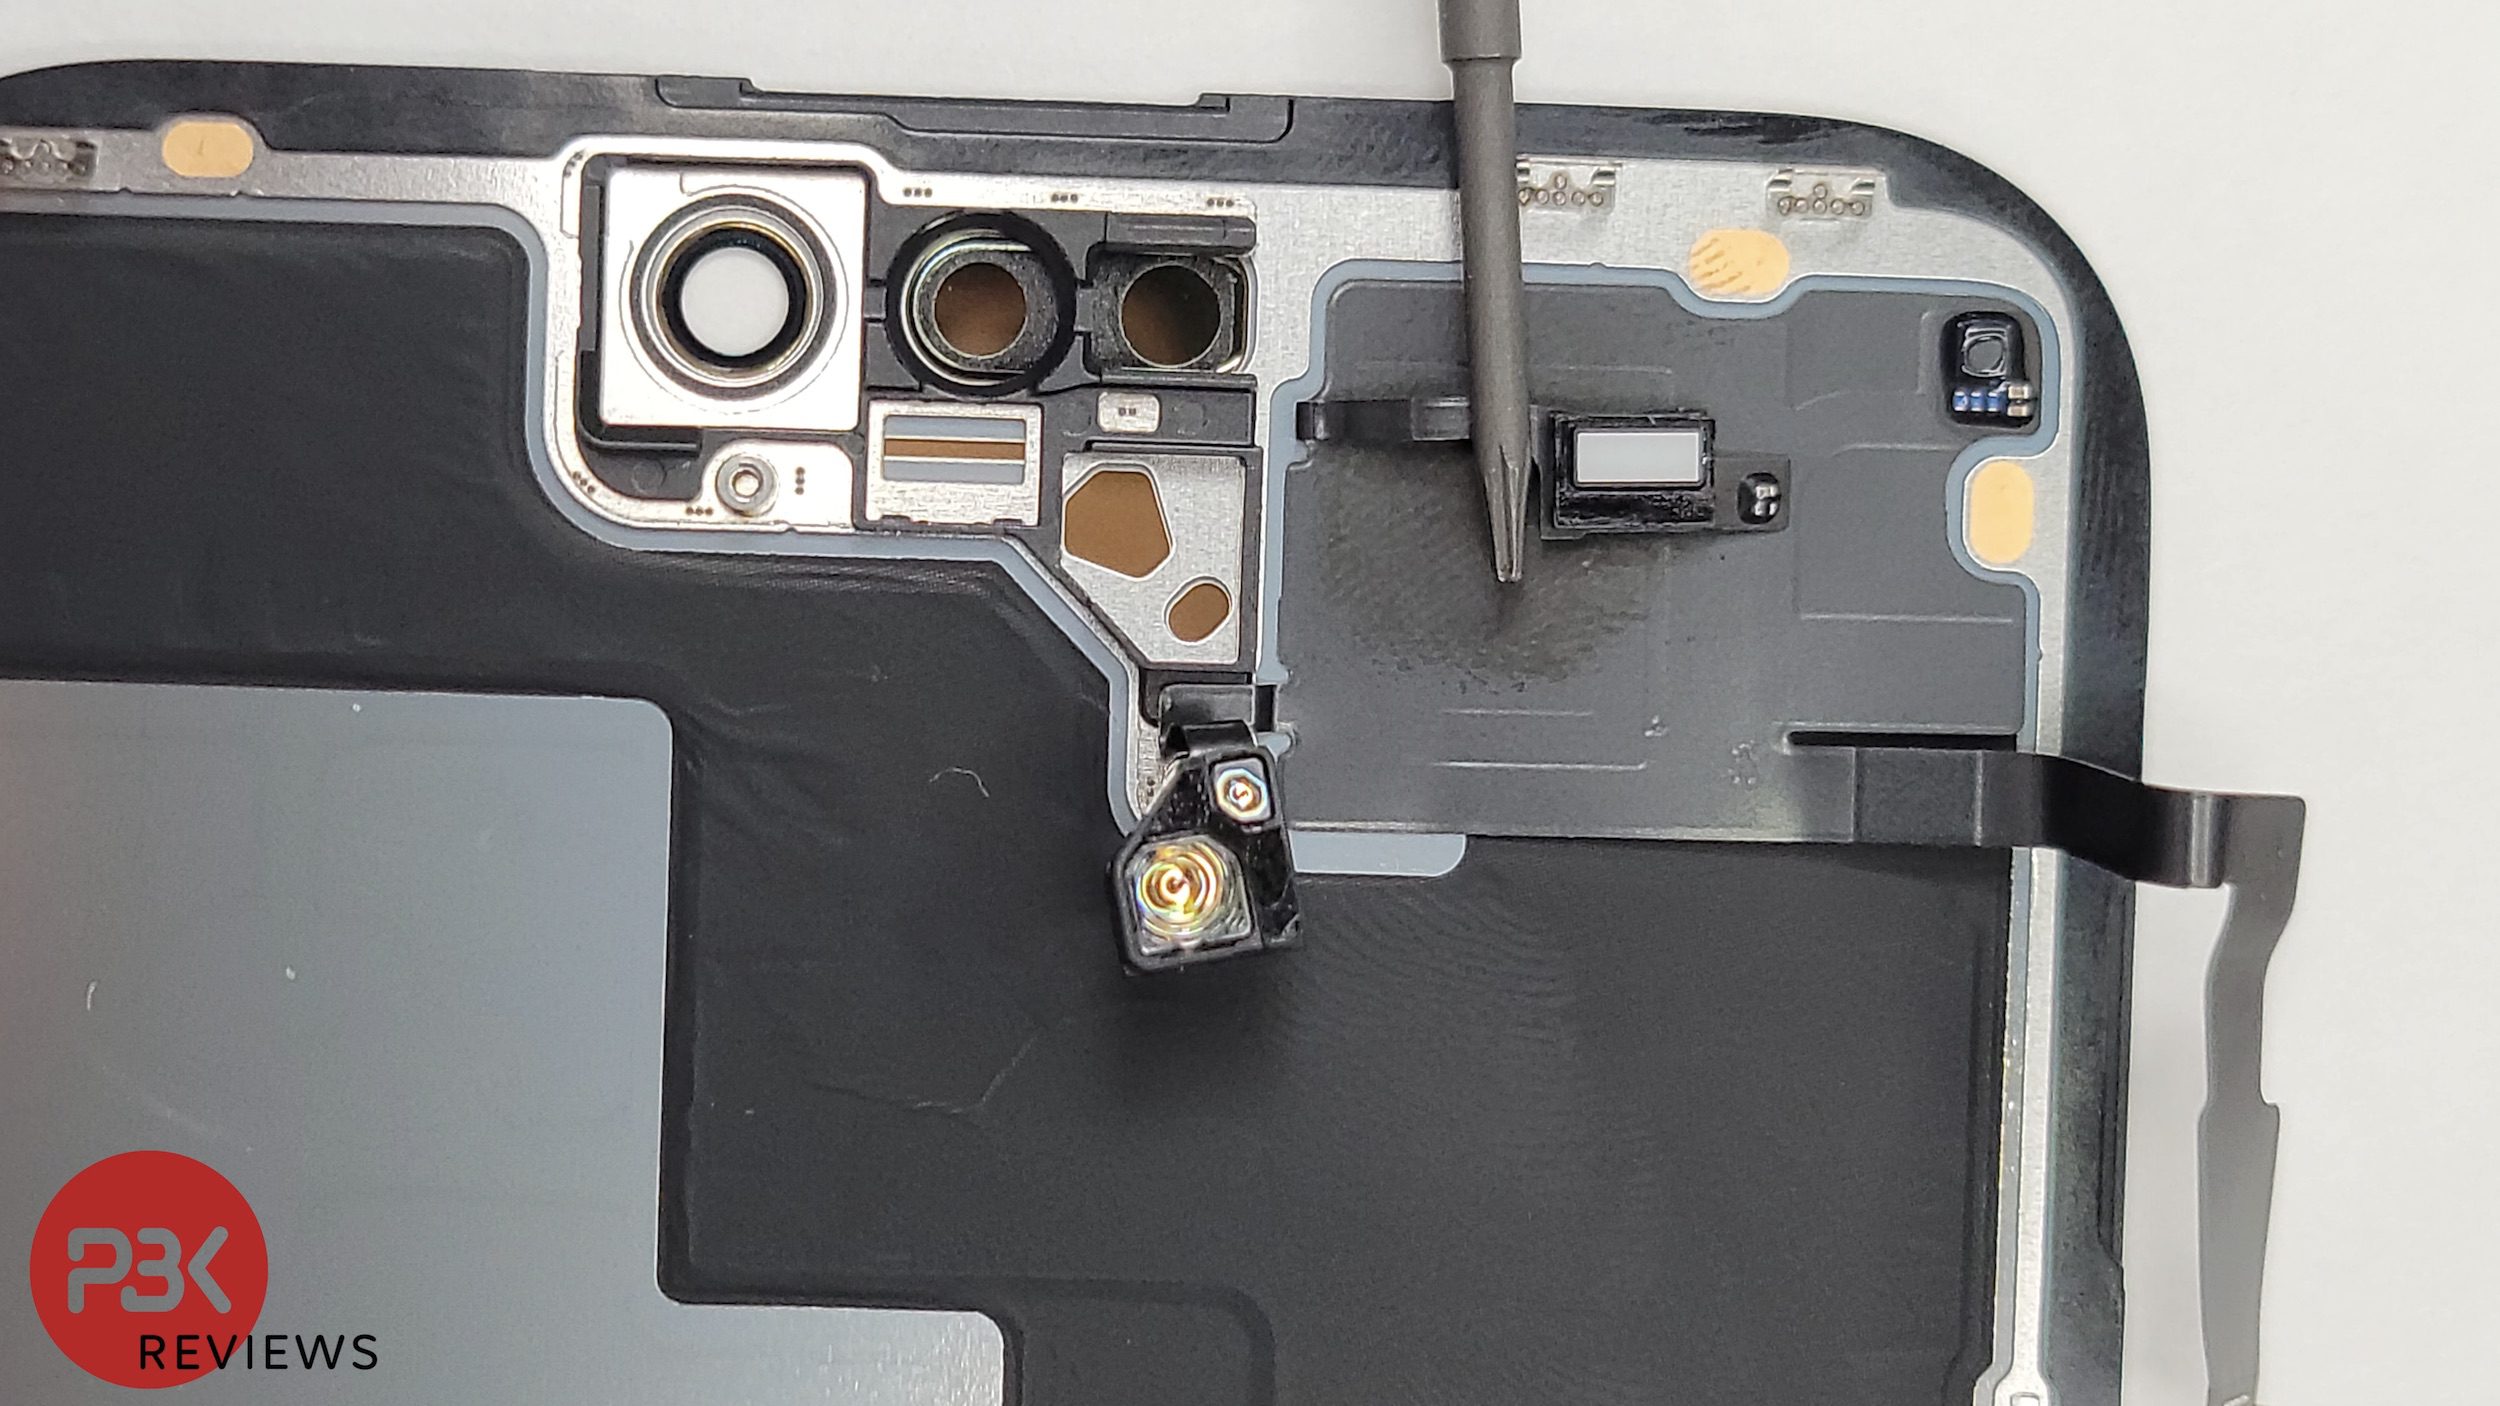 Wczesne rozłożenie iPhone’a 14 Pro Max daje nam pierwsze spojrzenie na wewnętrzne komponenty telefonu.